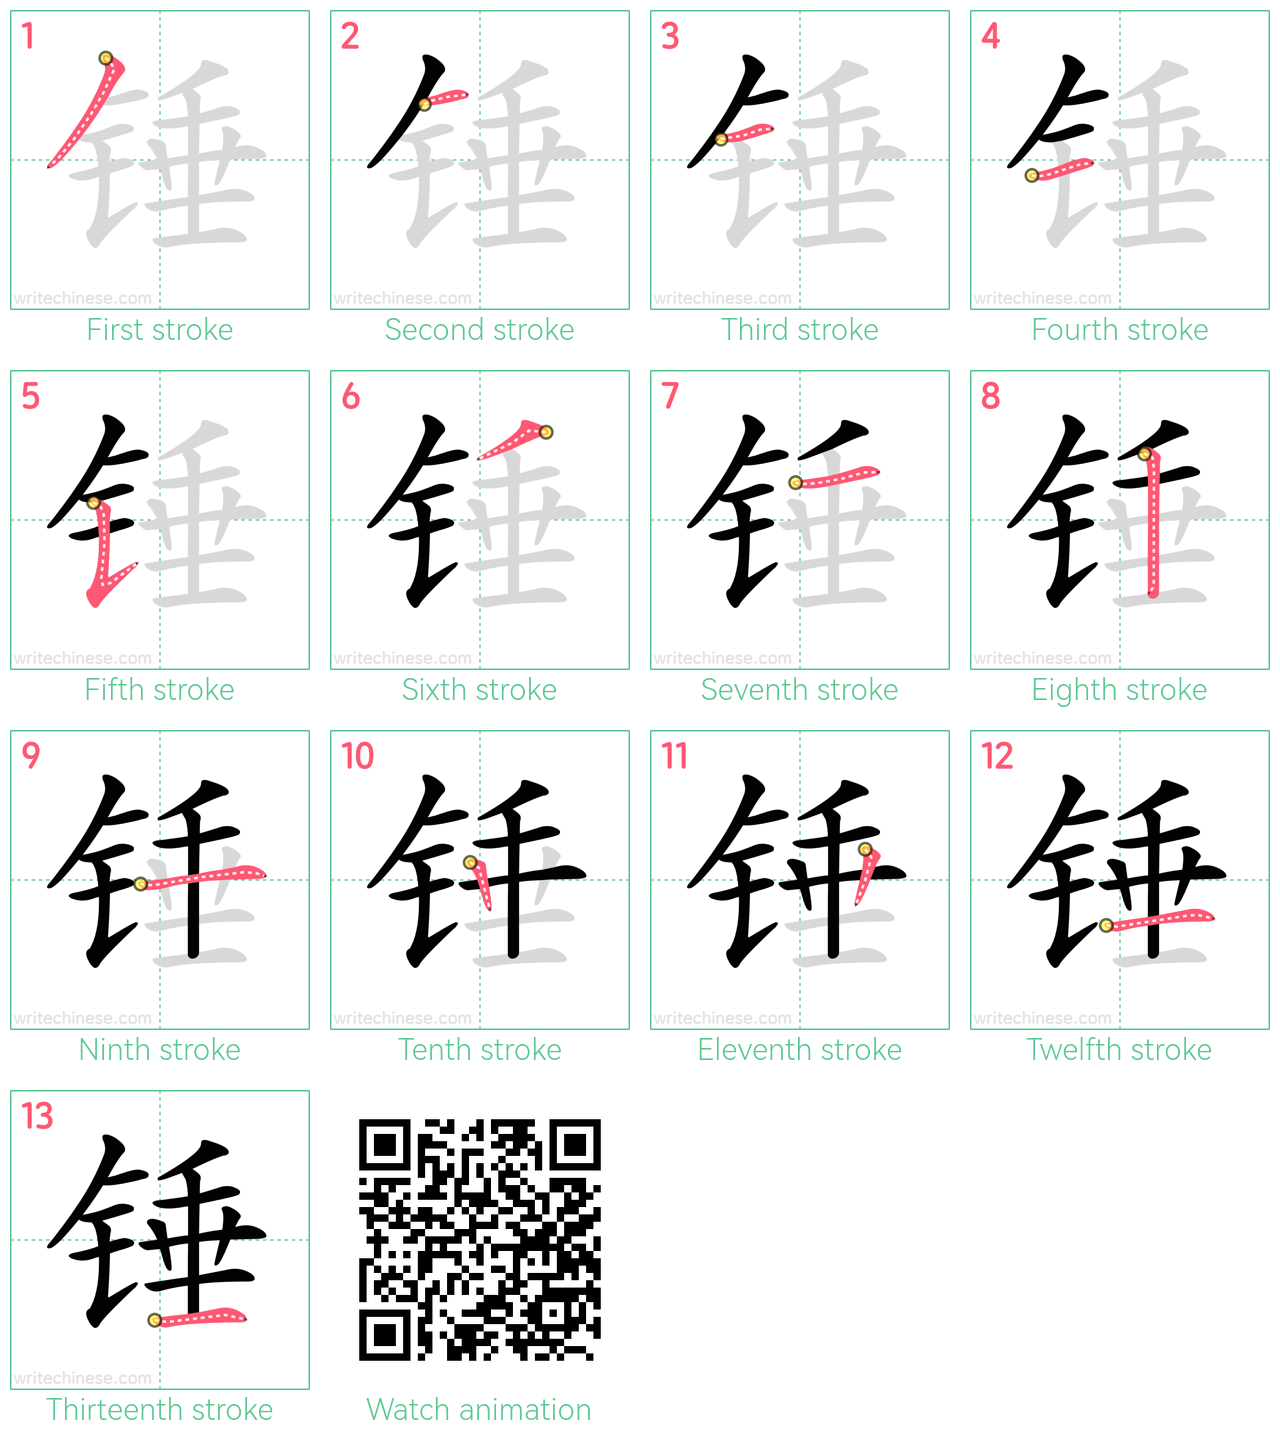 锤 step-by-step stroke order diagrams